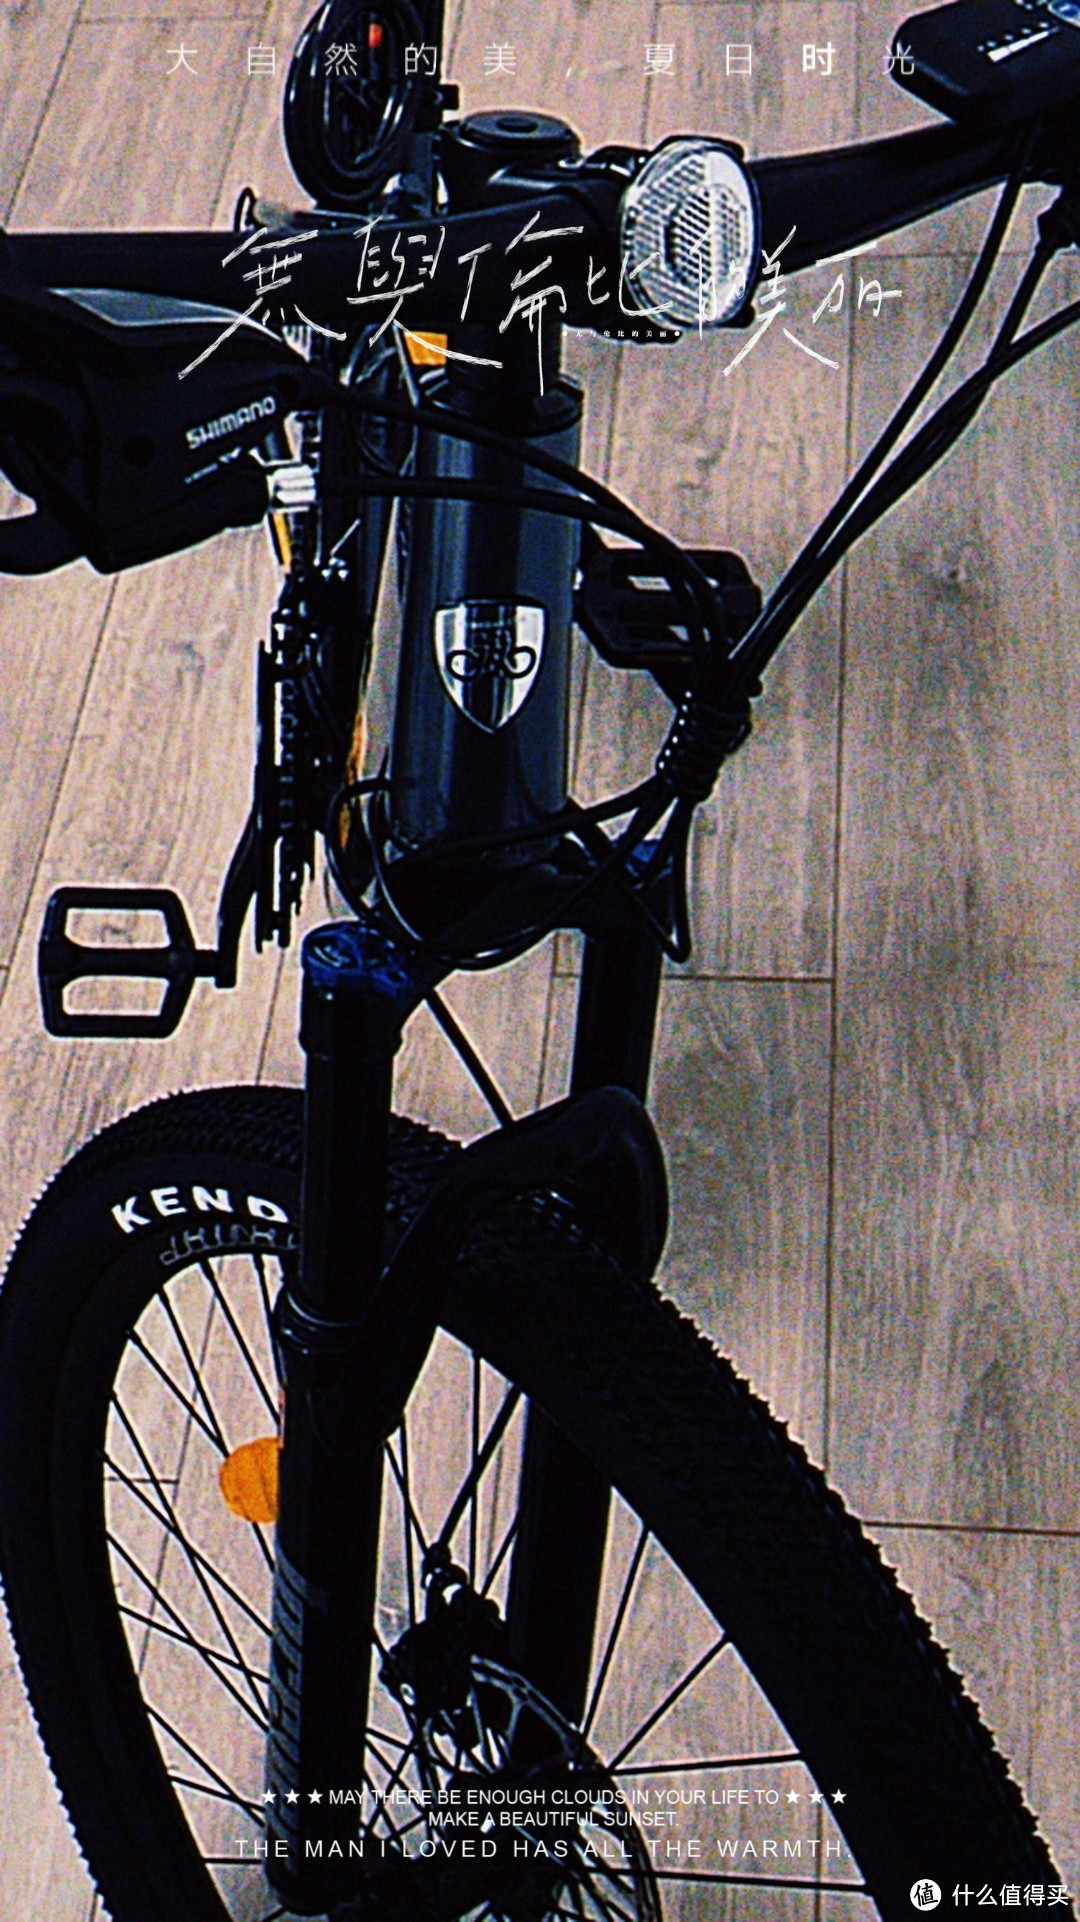 实测惊人!F45 26 寸 21 速摩天灰银 5AH 电动自行车，让你飞快爱上它!